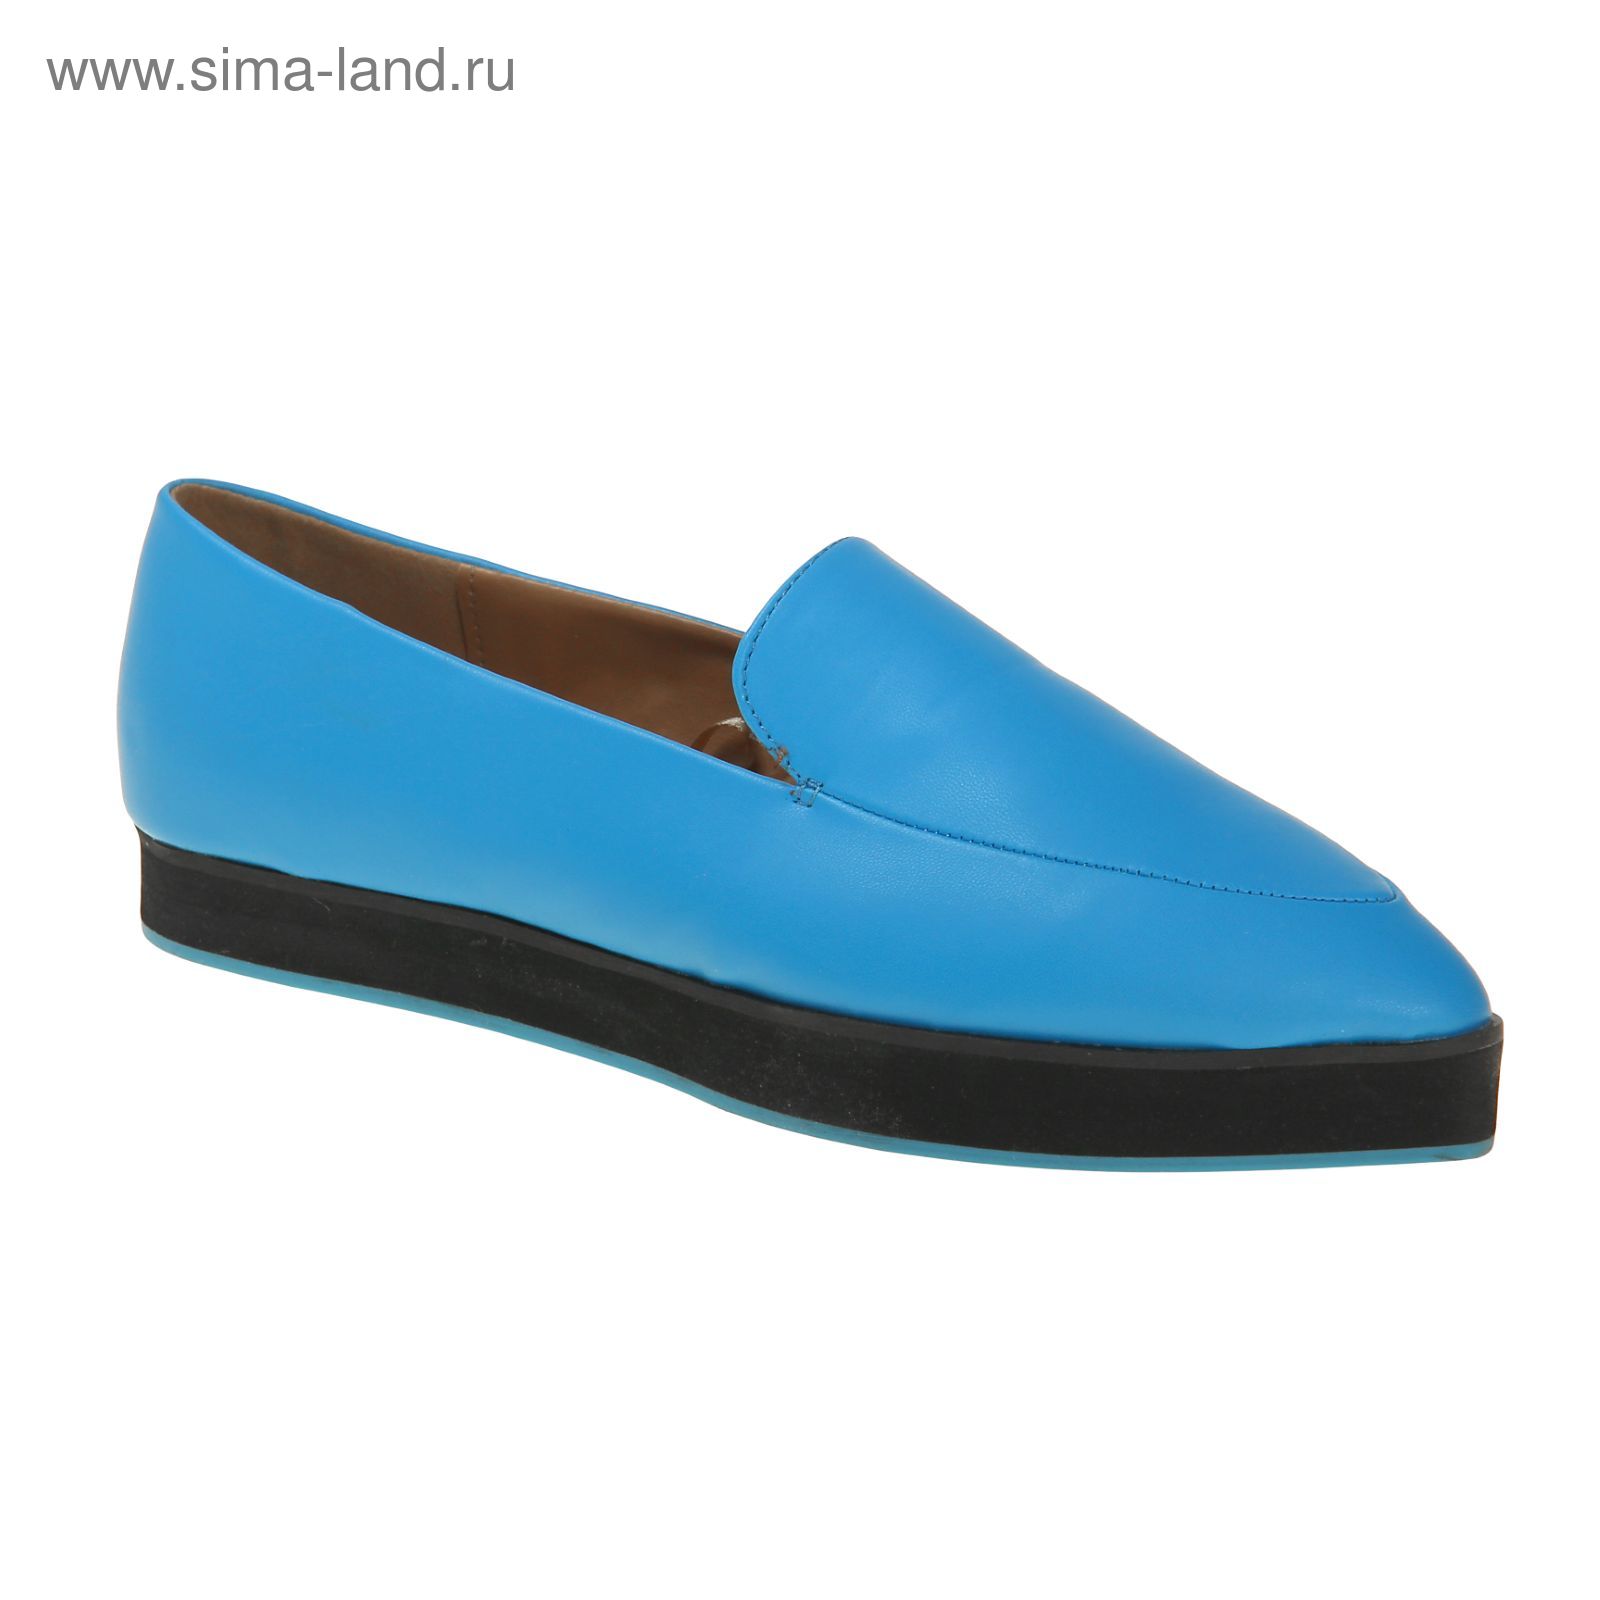 Туфли (лоферы) женские, цвет синий, размер 38 (арт. 1616033020)